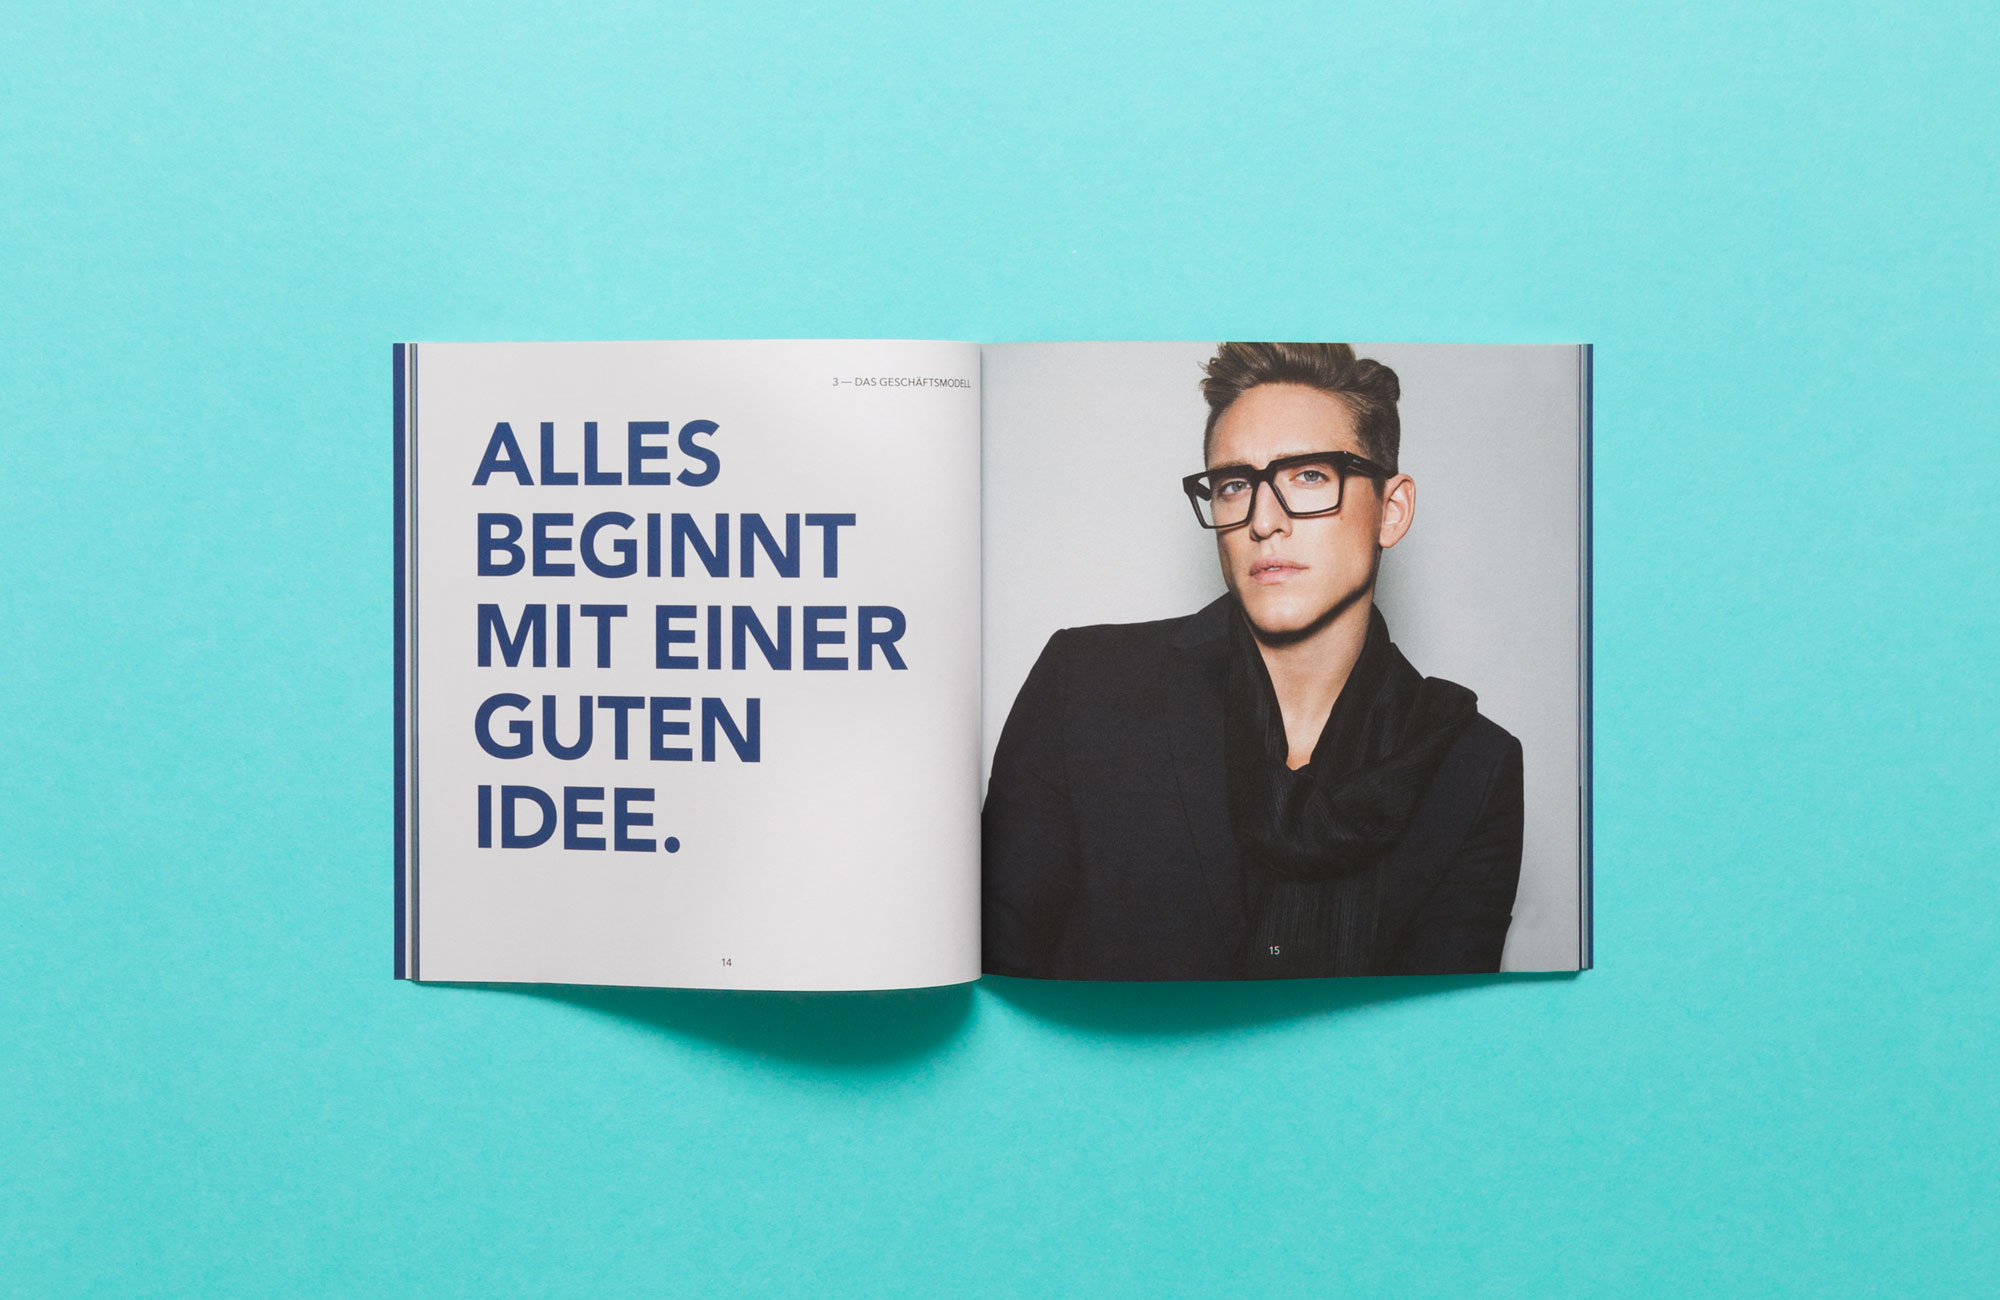 75a Büro für Gestaltung aus Stuttgart hat das neue Corporate Design Brandbook für den schwedischen Brillenhersteller smarteyes entworfen